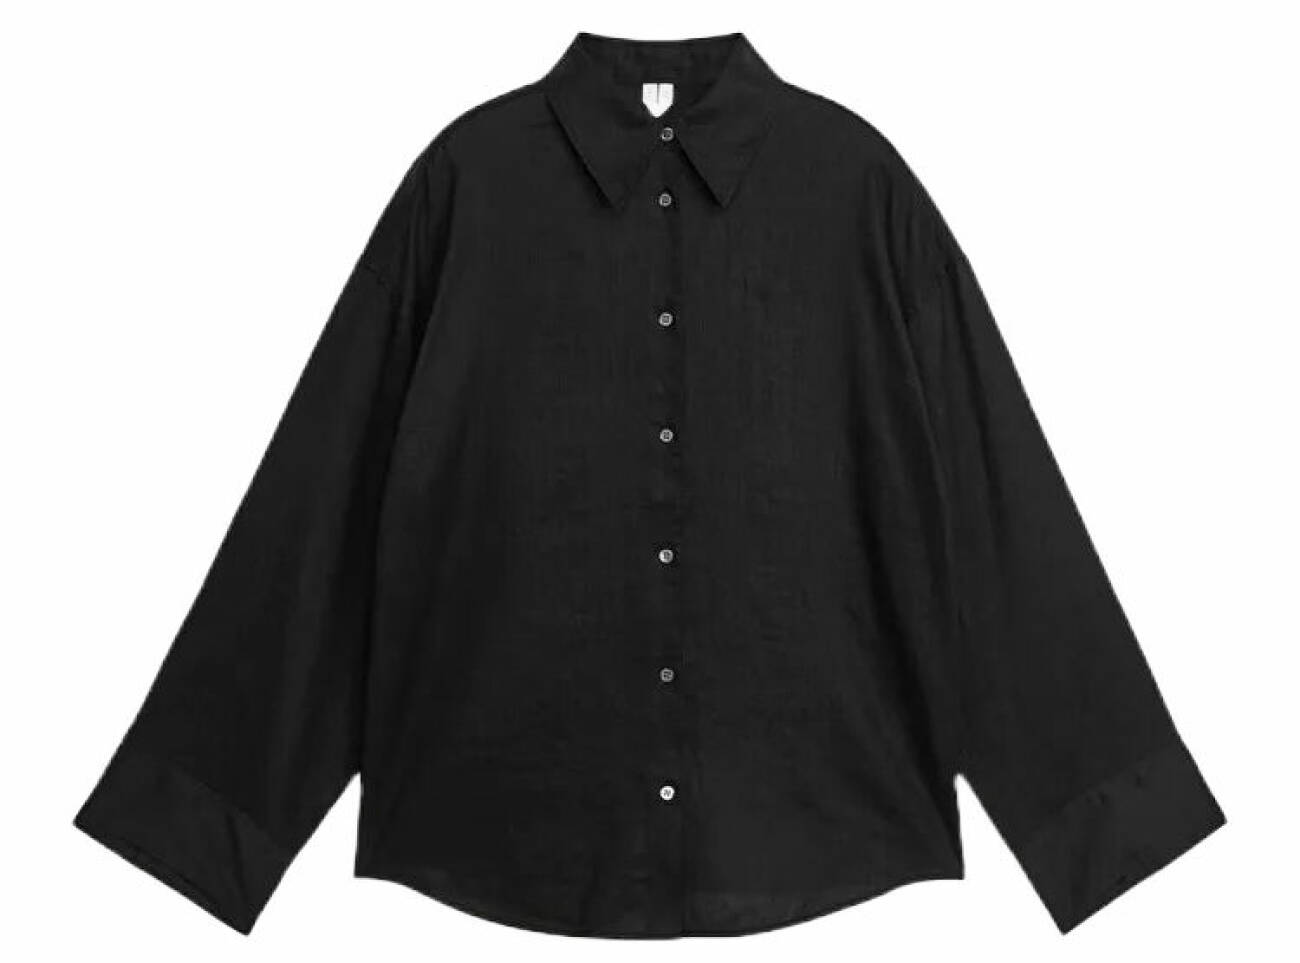 linneskjorta i svart nyans och med avslappnad passform från Arket